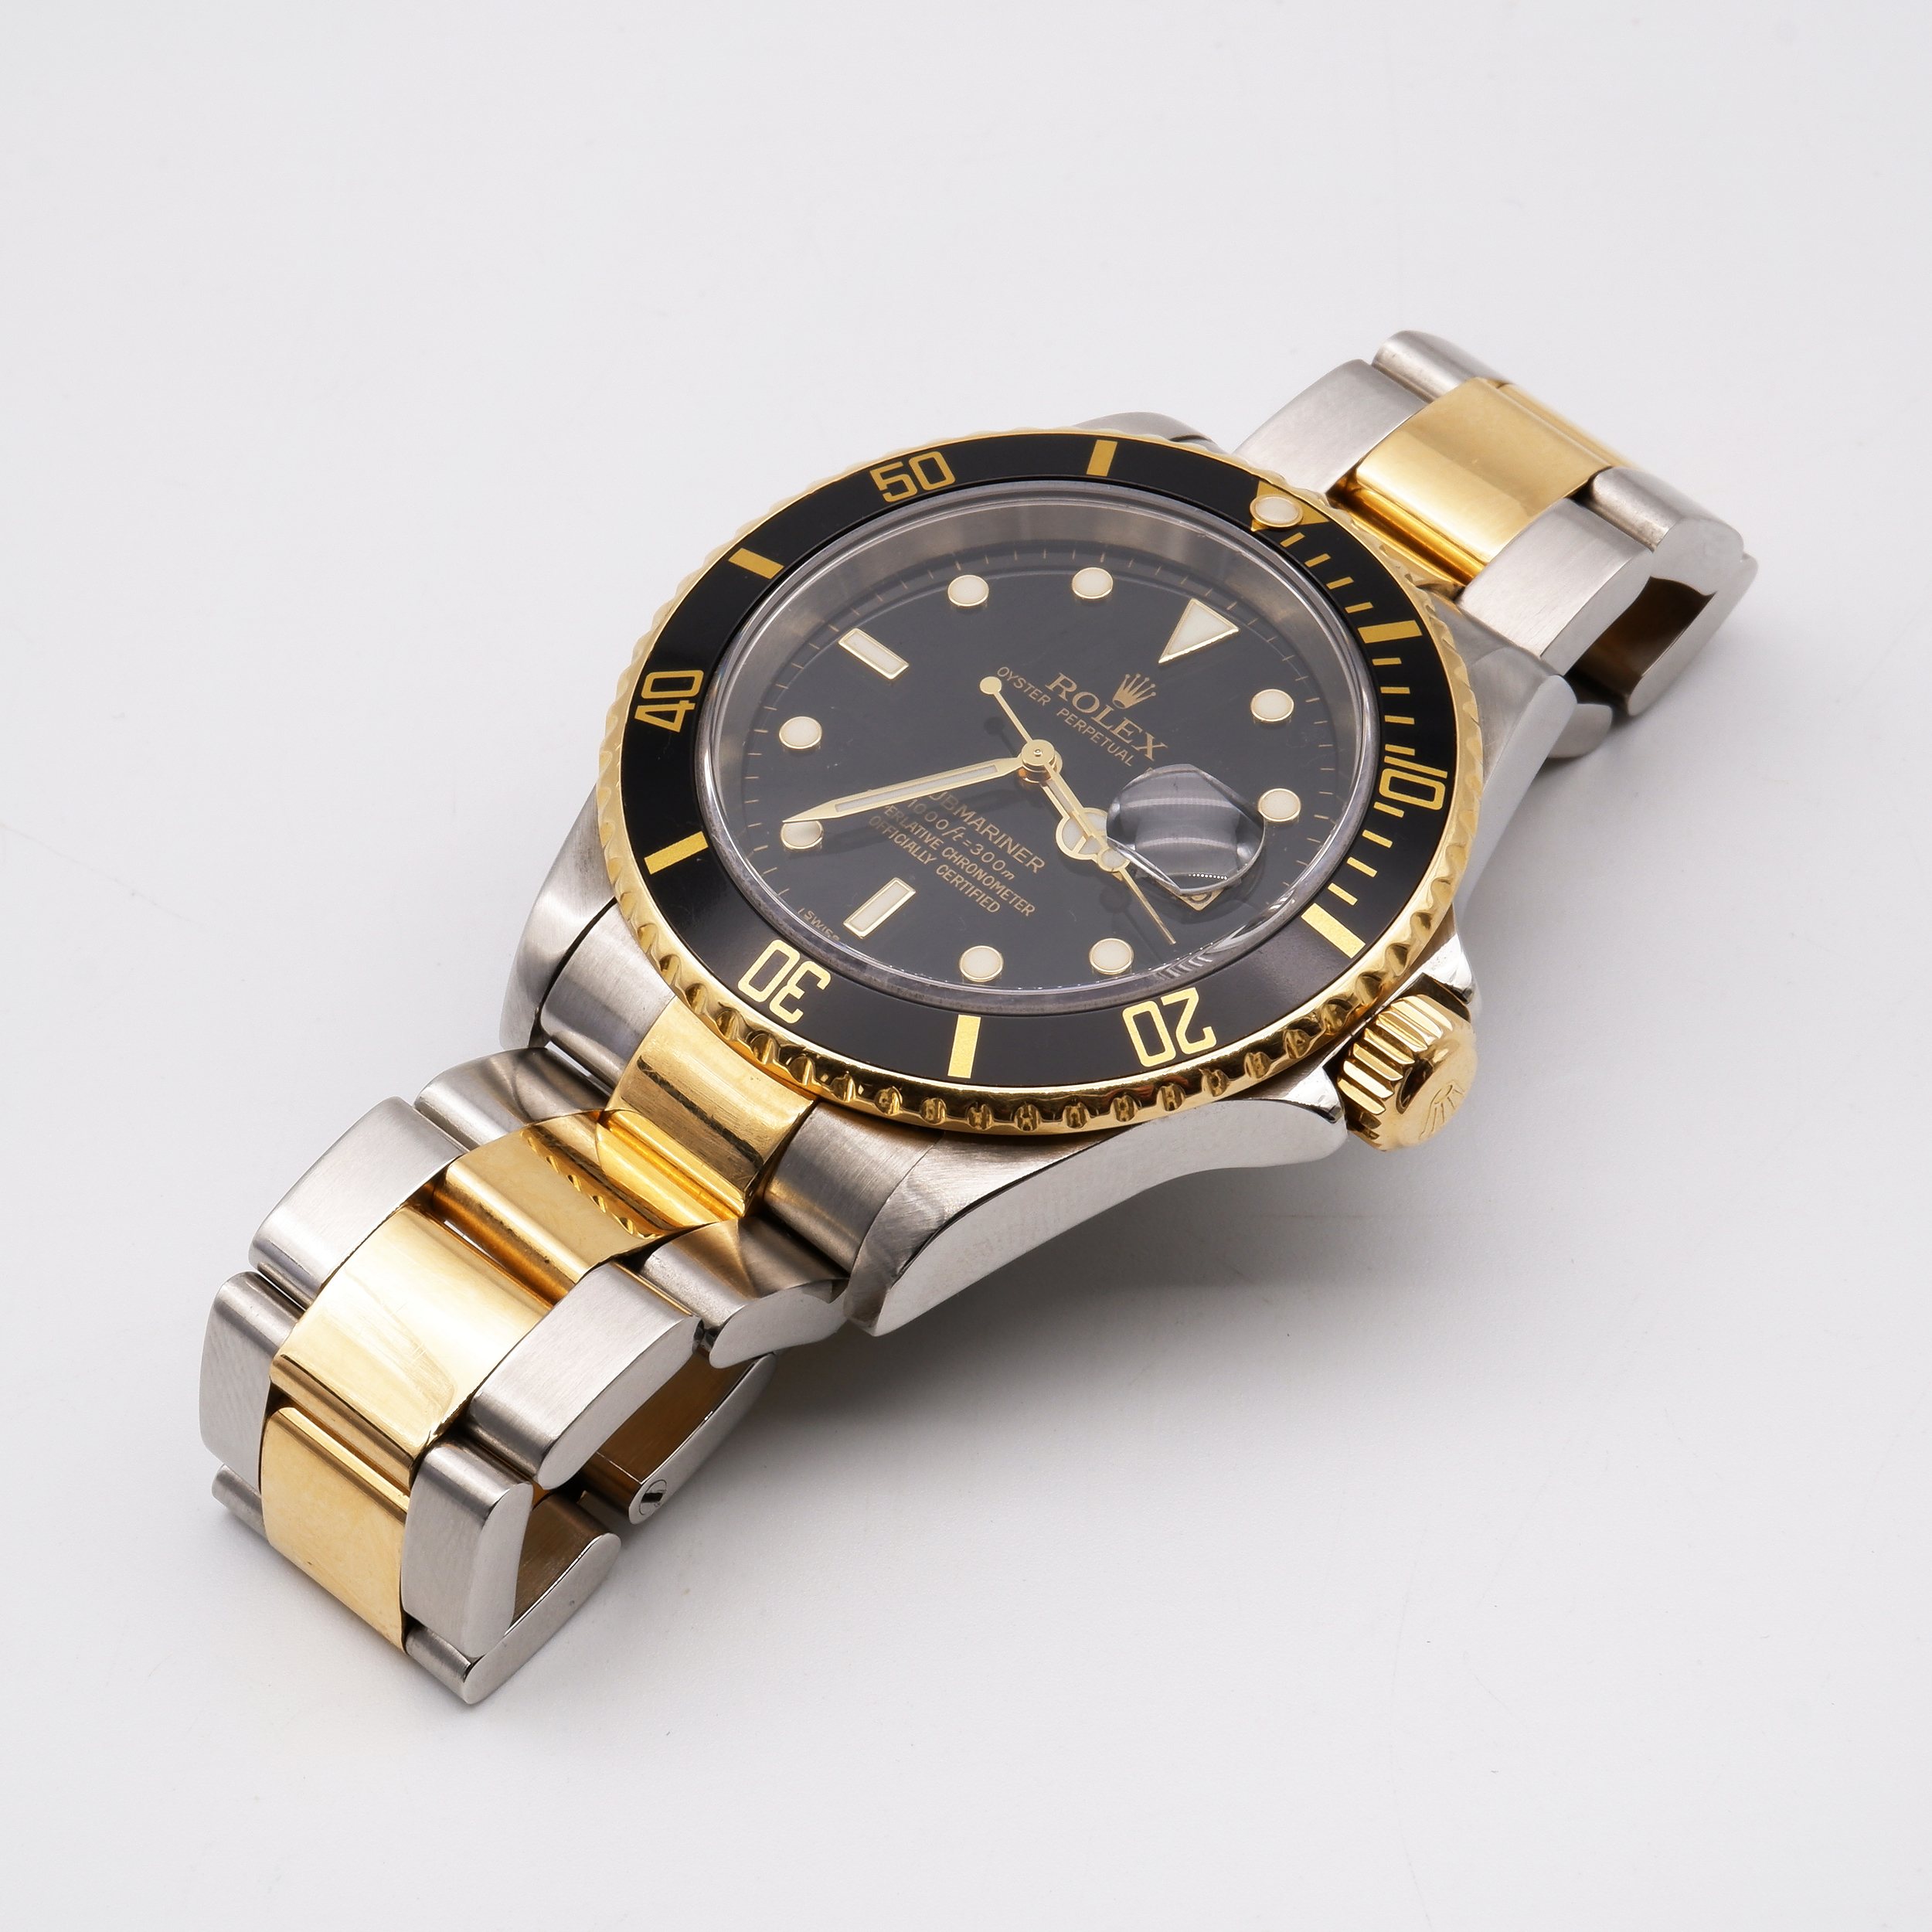 'Genuine Rolex Submariner Date (16613T) Gents Wristwatch'